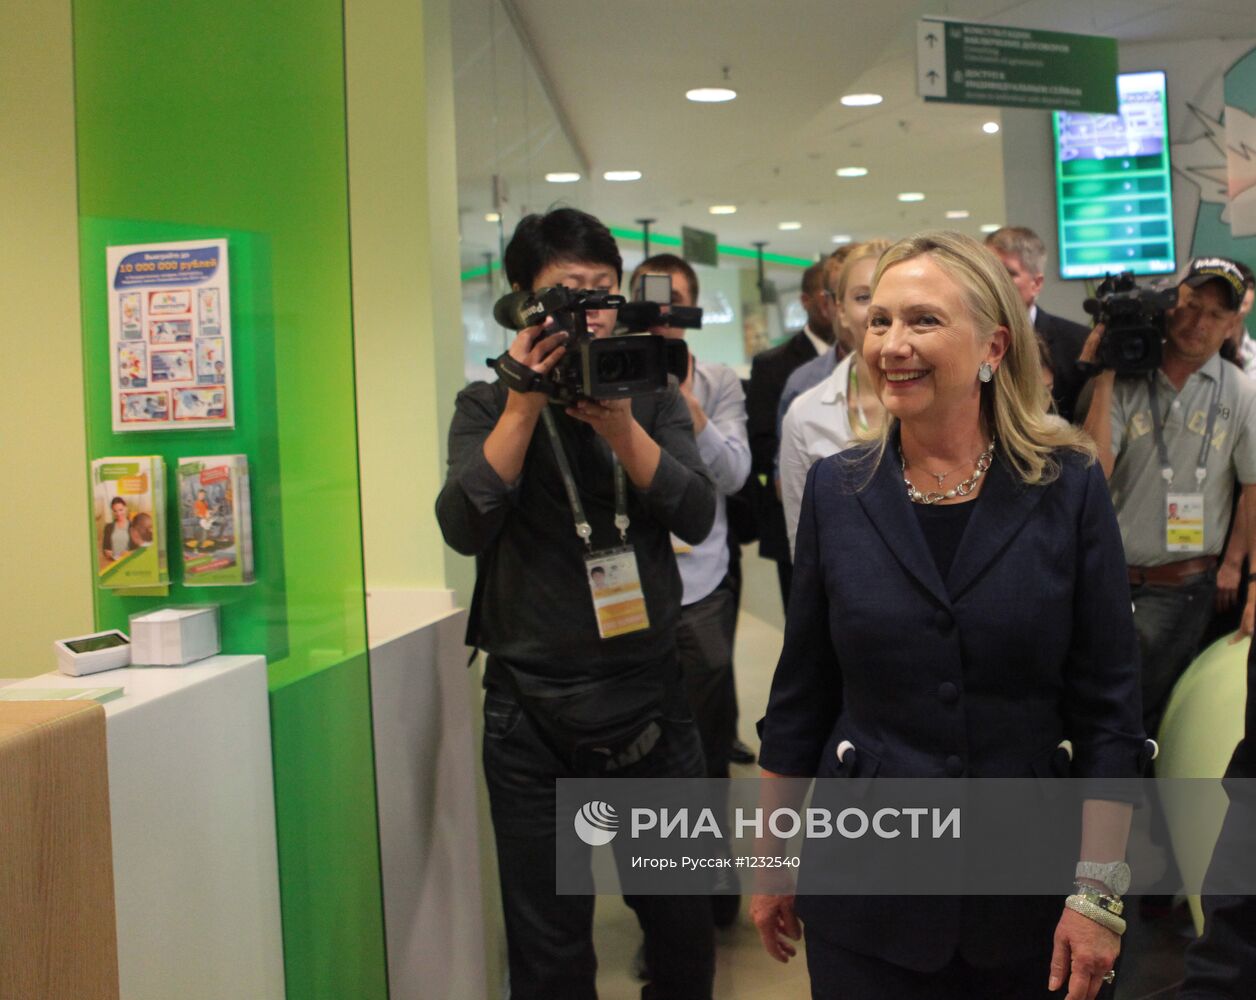 Х.Клинтон посетила офис "Молодежный" Сбербанка во Владивостоке